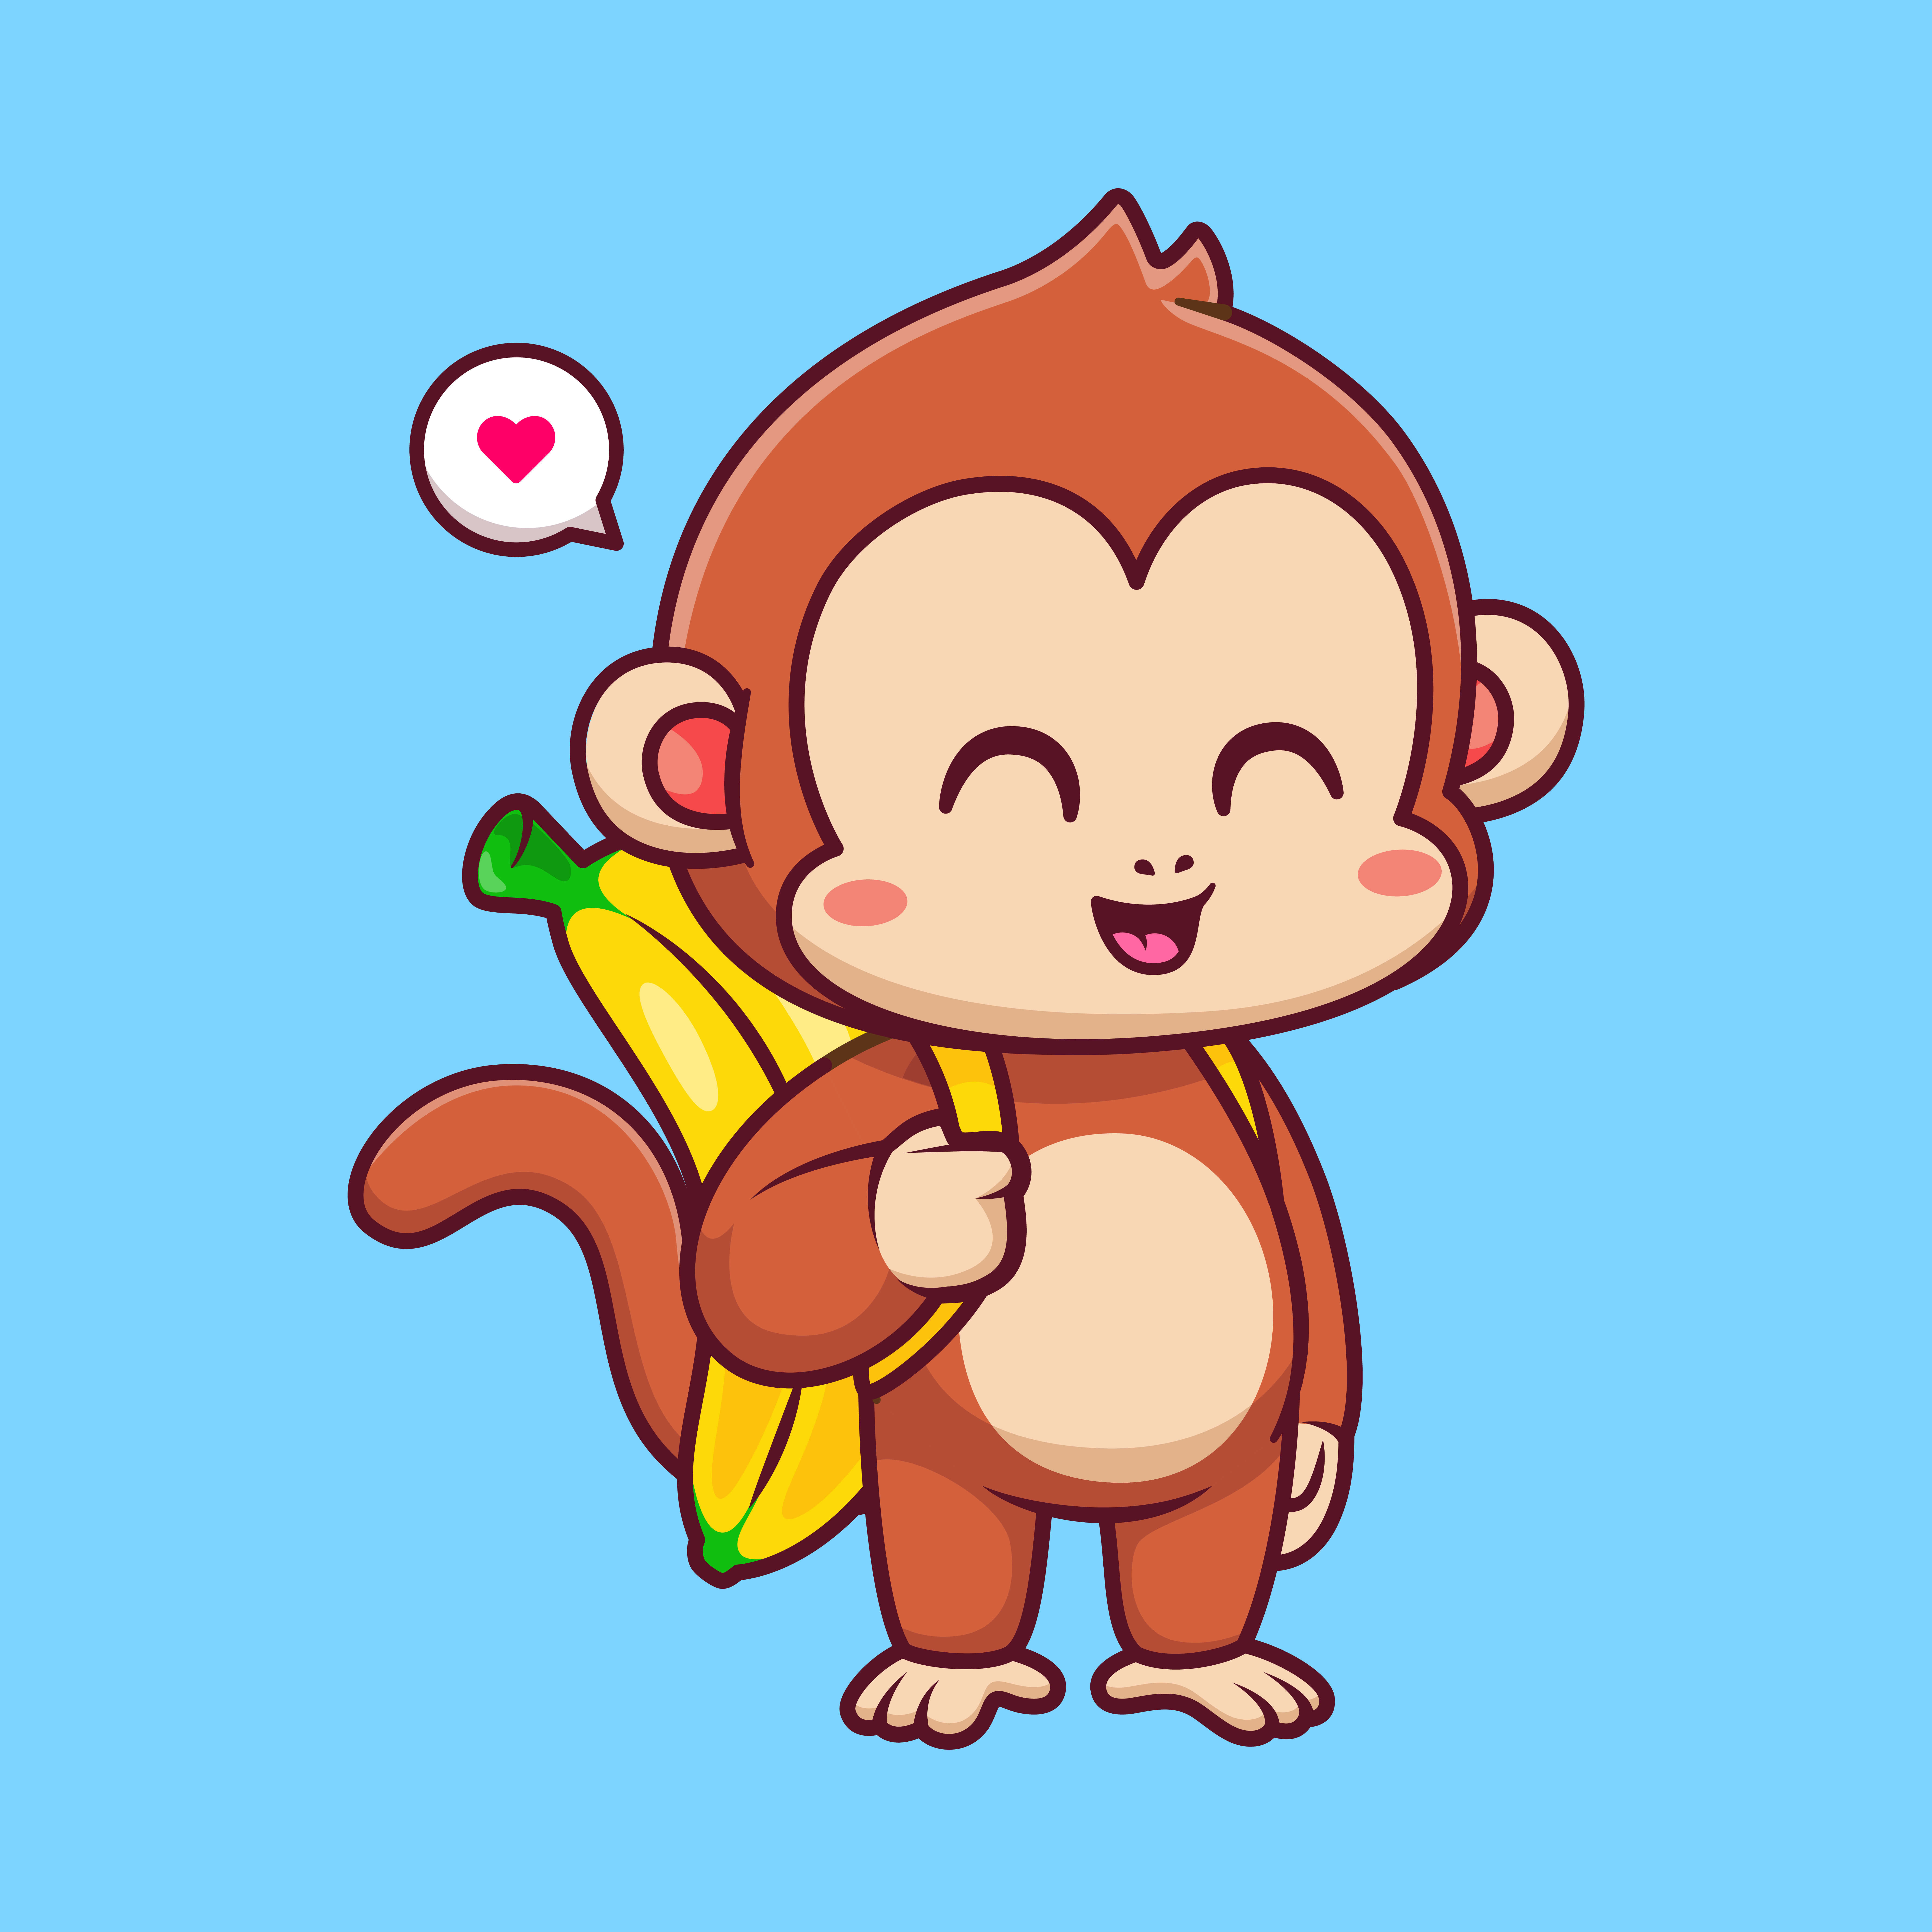 하늘색을 바탕으로 원숭이 그림으로 원숭이가 바나나 모양의 가방을 메고 웃고있고 말풍선에는 하트가 그려져 있다.